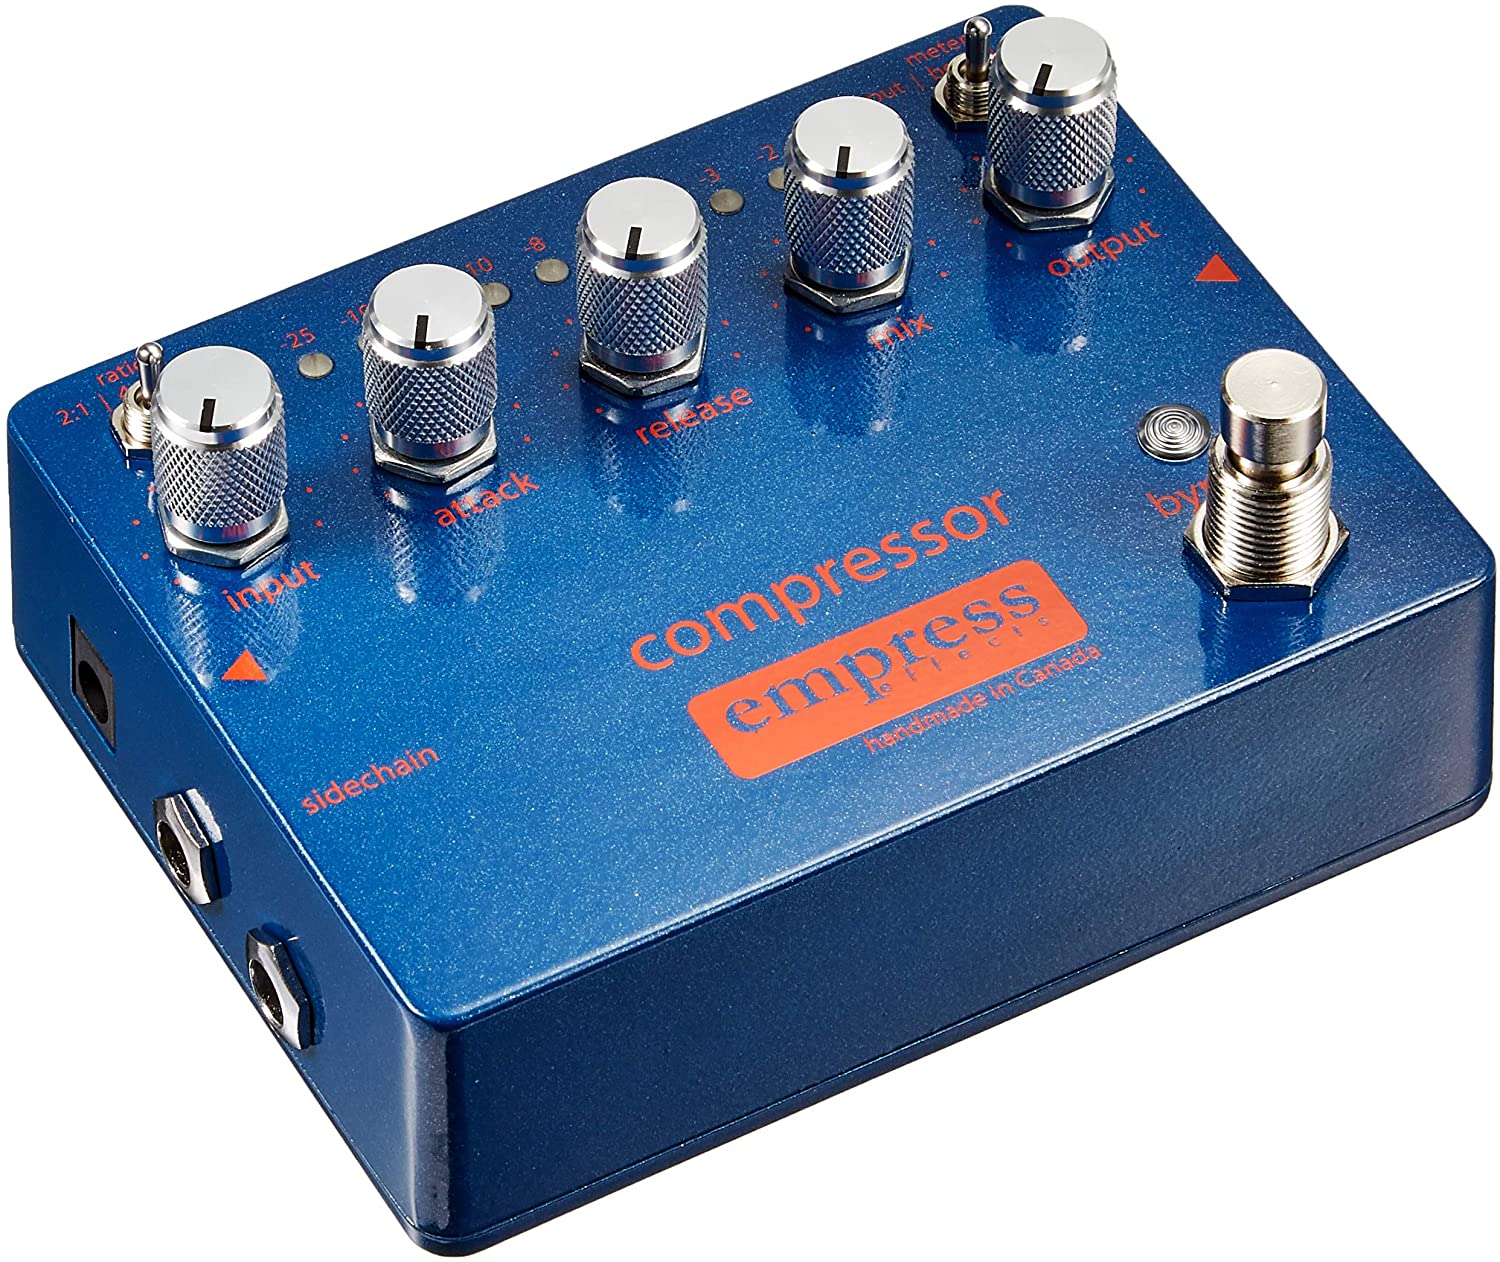 Anyone using a compressor pedal for jazz?-empress-compressor-jpg